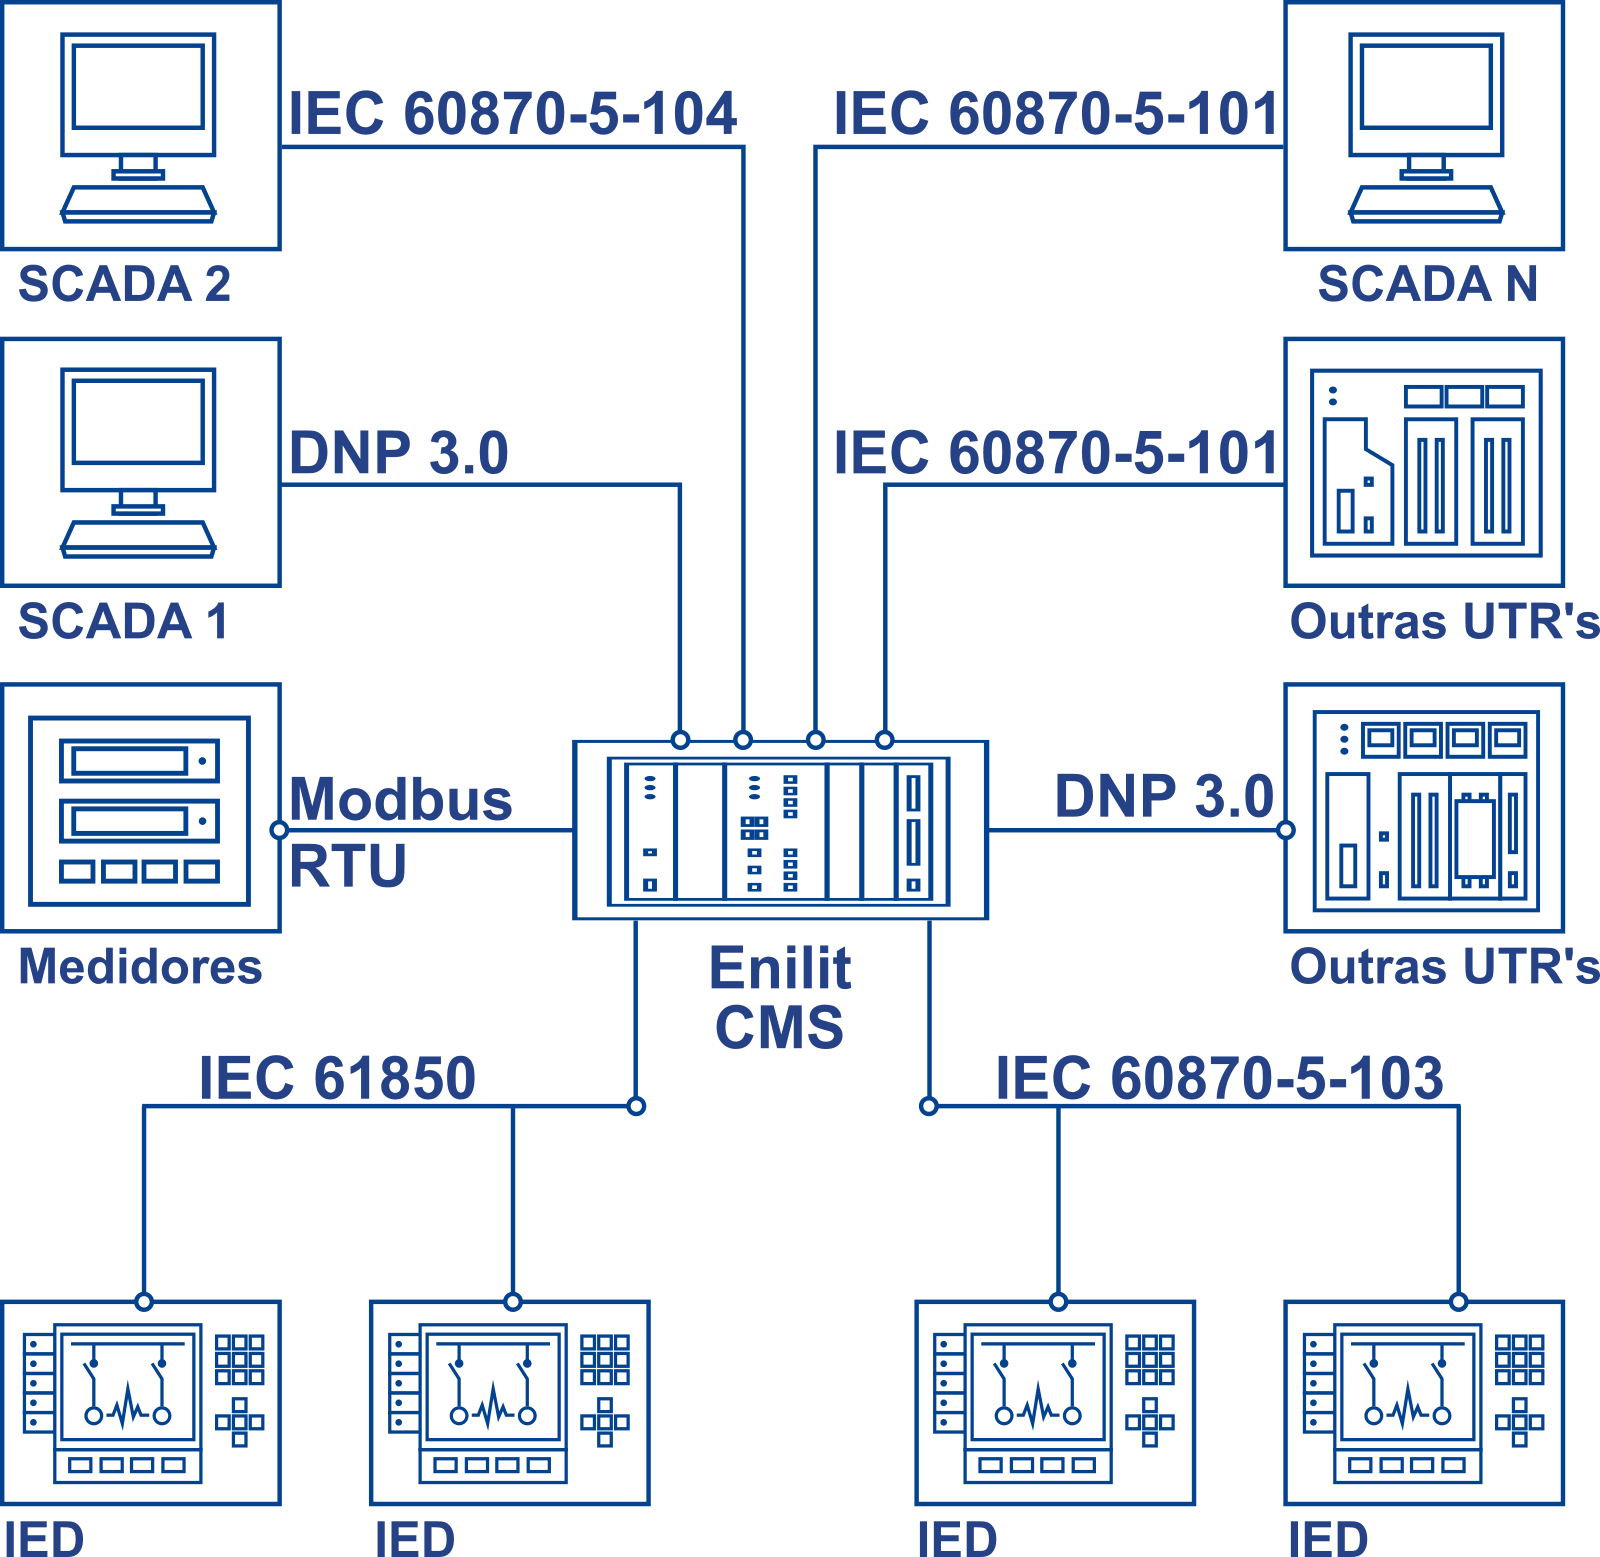 IEC 61850 standard process bus port number protocol implentation exemplo nó lógico simulador simulator .pdf português projeto e implementação lógica de funcionamento siemens abb alstom